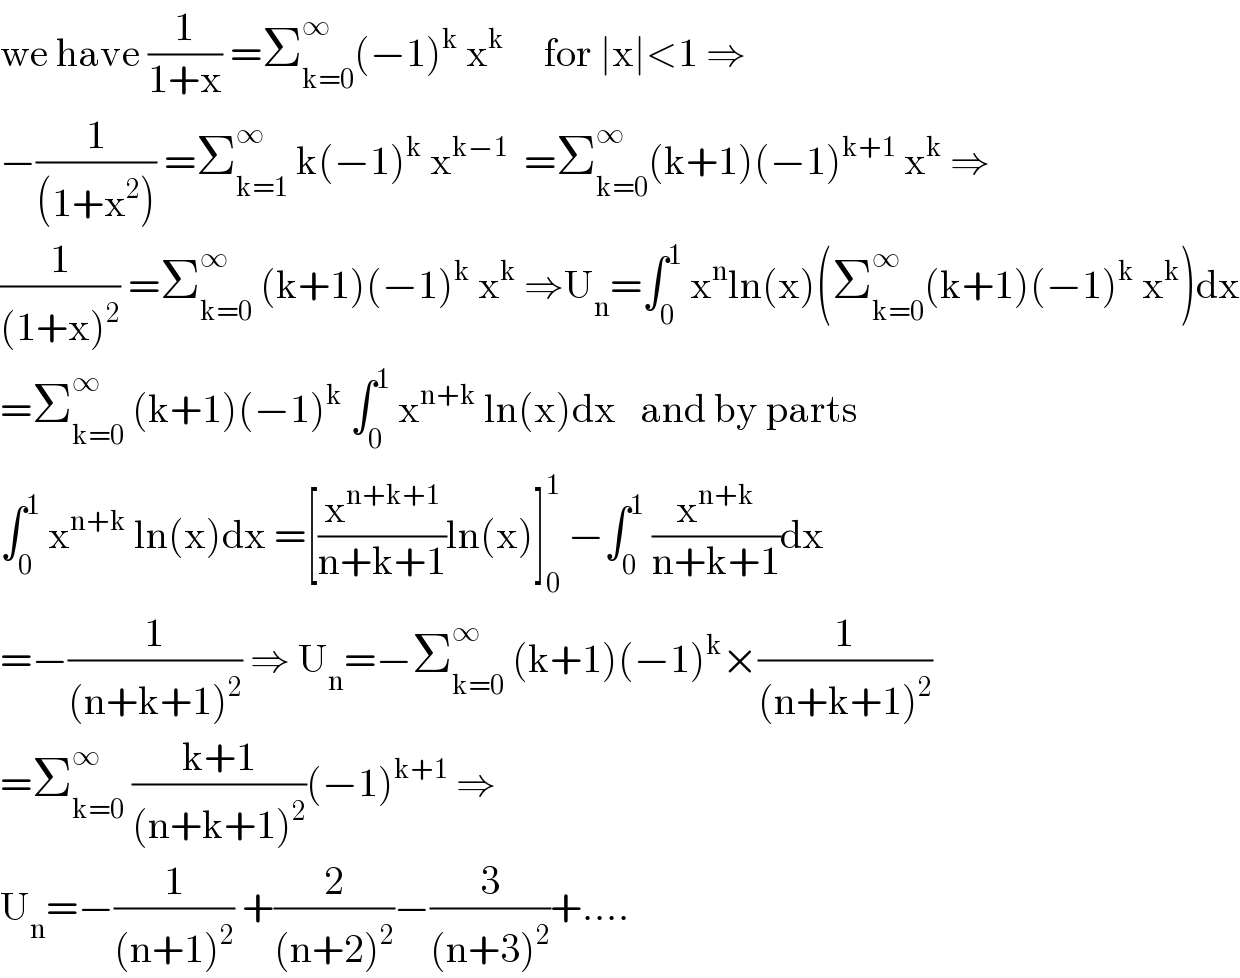 we have (1/(1+x)) =Σ_(k=0) ^∞ (−1)^k  x^k      for ∣x∣<1 ⇒  −(1/((1+x^2 ))) =Σ_(k=1) ^∞  k(−1)^k  x^(k−1)   =Σ_(k=0) ^∞ (k+1)(−1)^(k+1)  x^k  ⇒  (1/((1+x)^2 )) =Σ_(k=0) ^∞  (k+1)(−1)^k  x^k  ⇒U_n =∫_0 ^1  x^n ln(x)(Σ_(k=0) ^∞ (k+1)(−1)^k  x^k )dx  =Σ_(k=0) ^∞  (k+1)(−1)^k  ∫_0 ^1  x^(n+k)  ln(x)dx   and by parts  ∫_0 ^1  x^(n+k)  ln(x)dx =[(x^(n+k+1) /(n+k+1))ln(x)]_0 ^1  −∫_0 ^1  (x^(n+k) /(n+k+1))dx  =−(1/((n+k+1)^2 )) ⇒ U_n =−Σ_(k=0) ^∞  (k+1)(−1)^k ×(1/((n+k+1)^2 ))  =Σ_(k=0) ^∞  ((k+1)/((n+k+1)^2 ))(−1)^(k+1)  ⇒  U_n =−(1/((n+1)^2 )) +(2/((n+2)^2 ))−(3/((n+3)^2 ))+....  